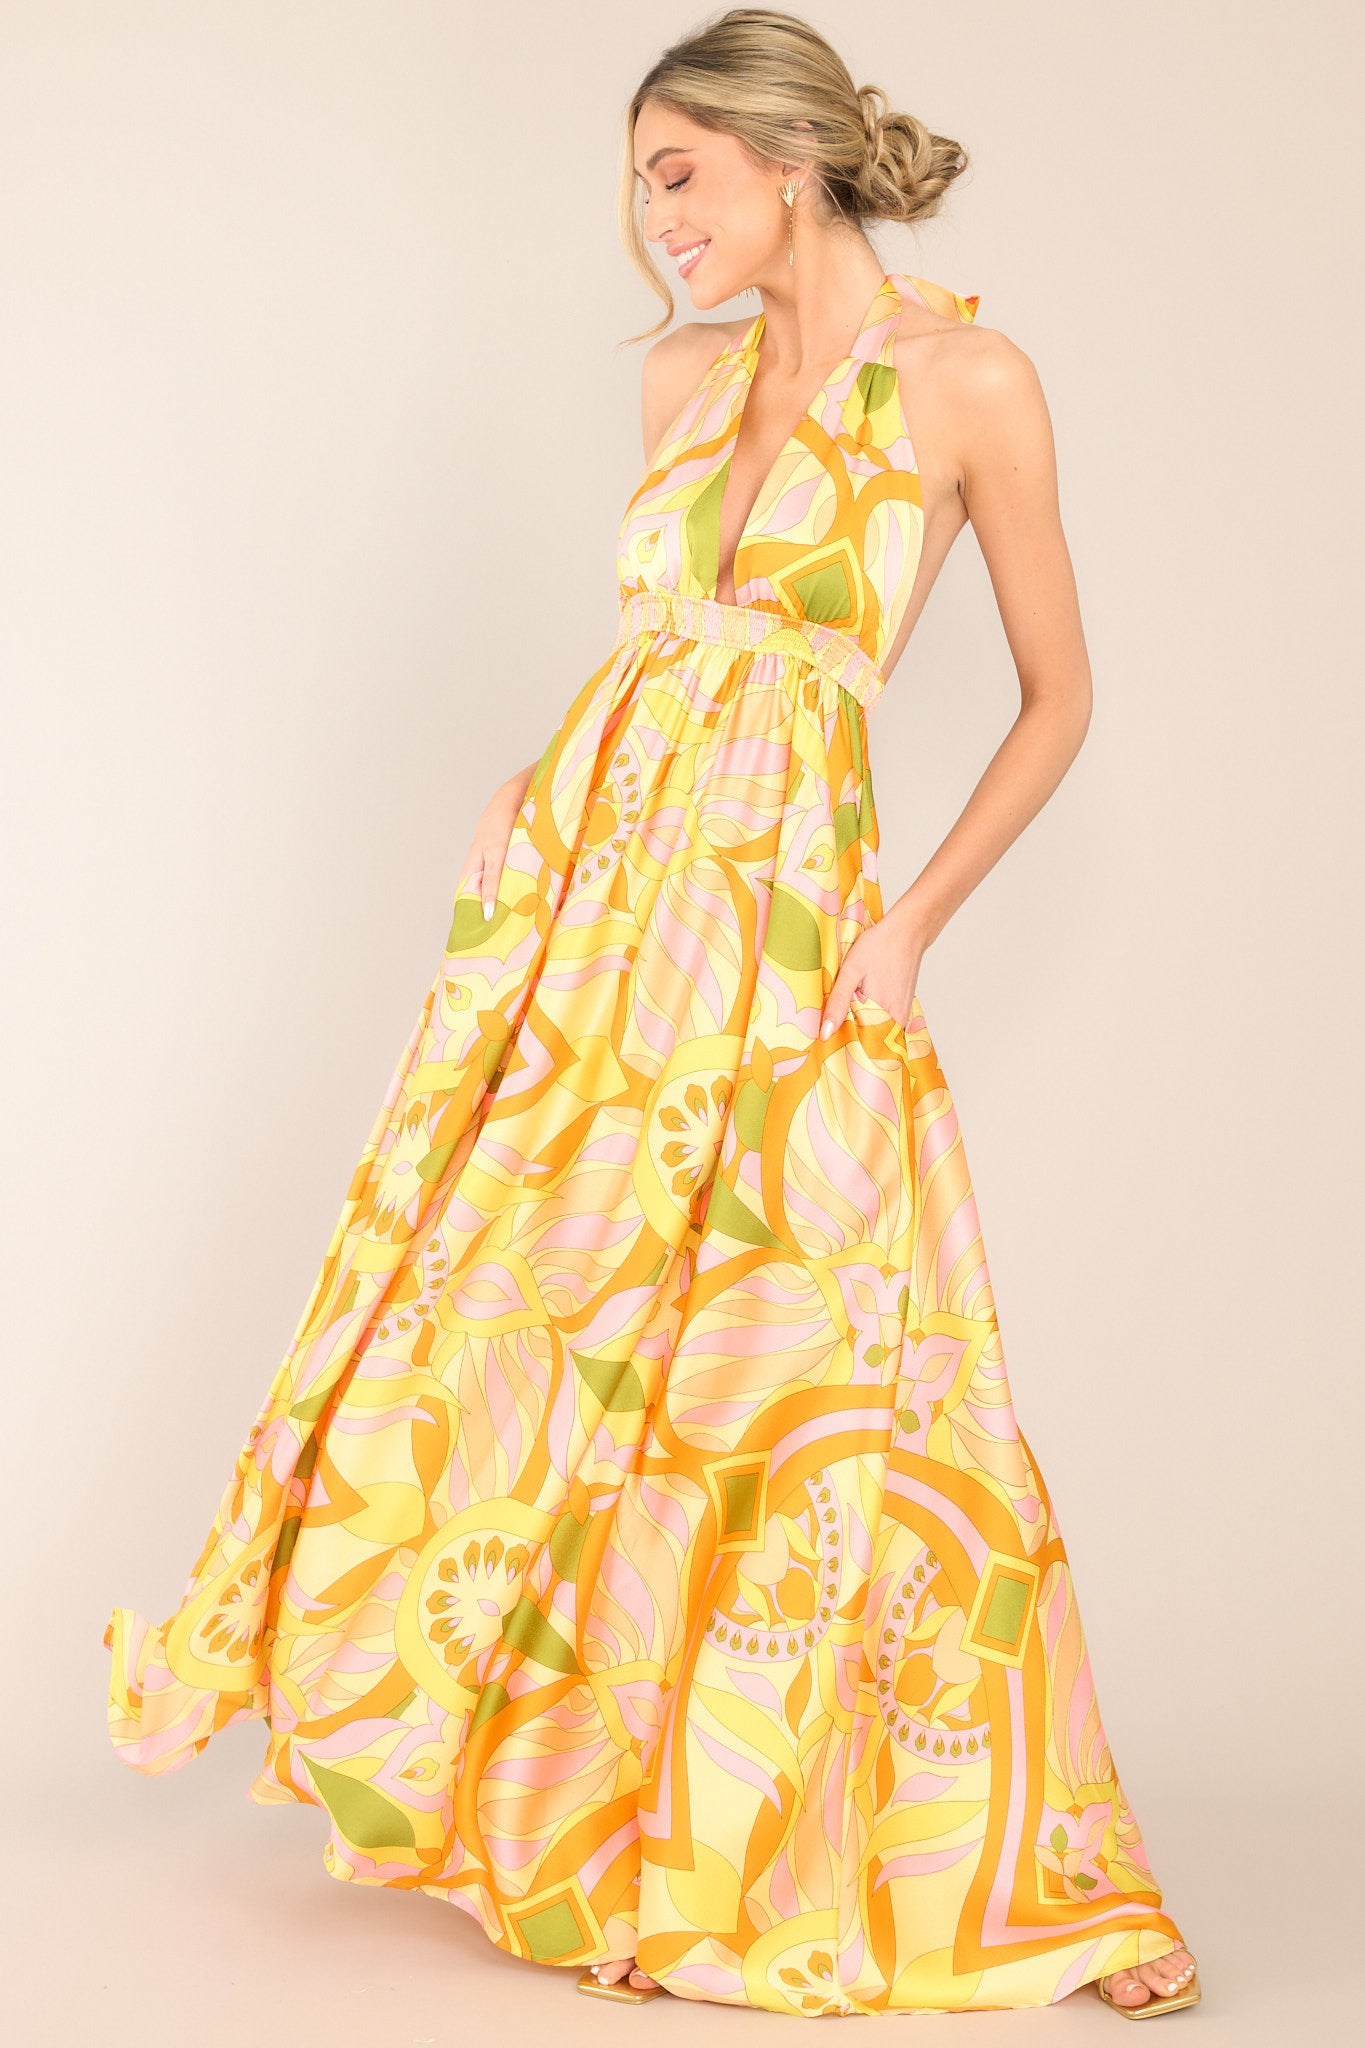 Citrus Yellow Maxi Dress - All Dresses